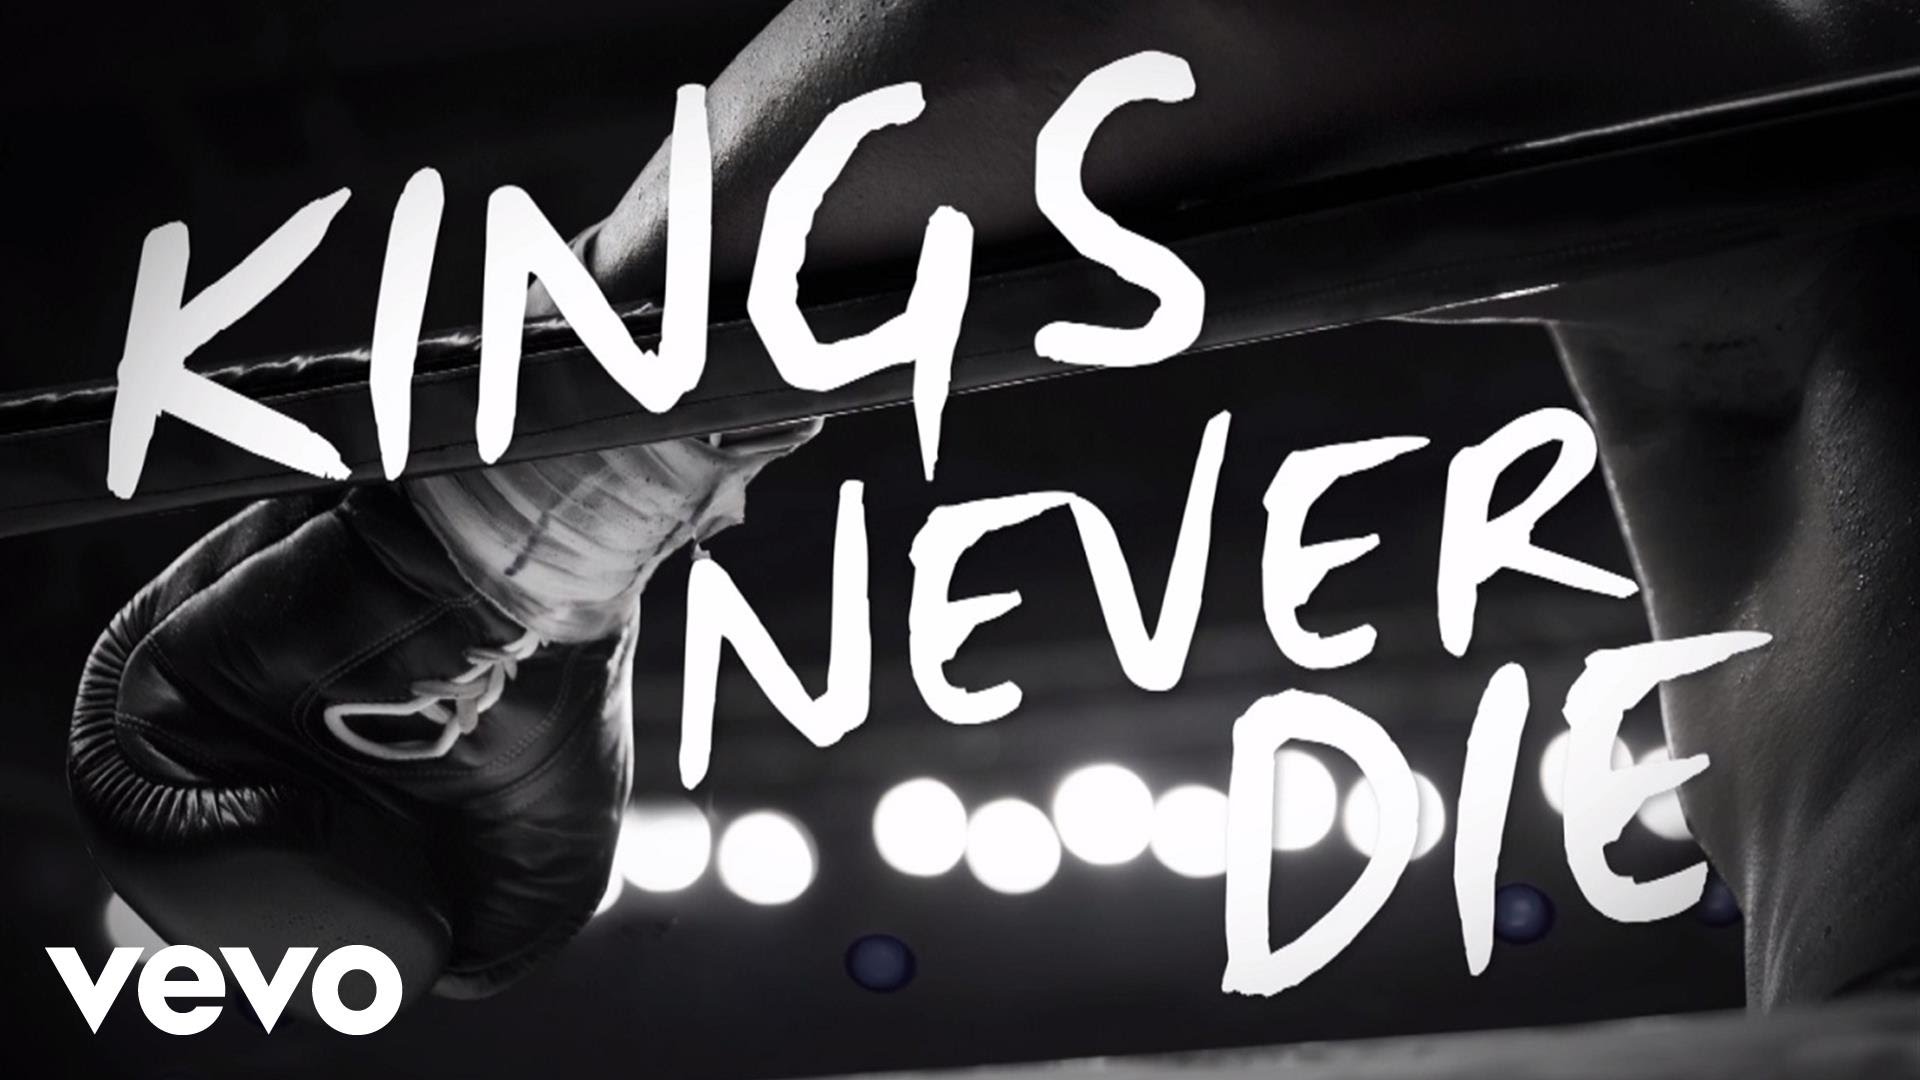 Gwen Stefani - Kings never die